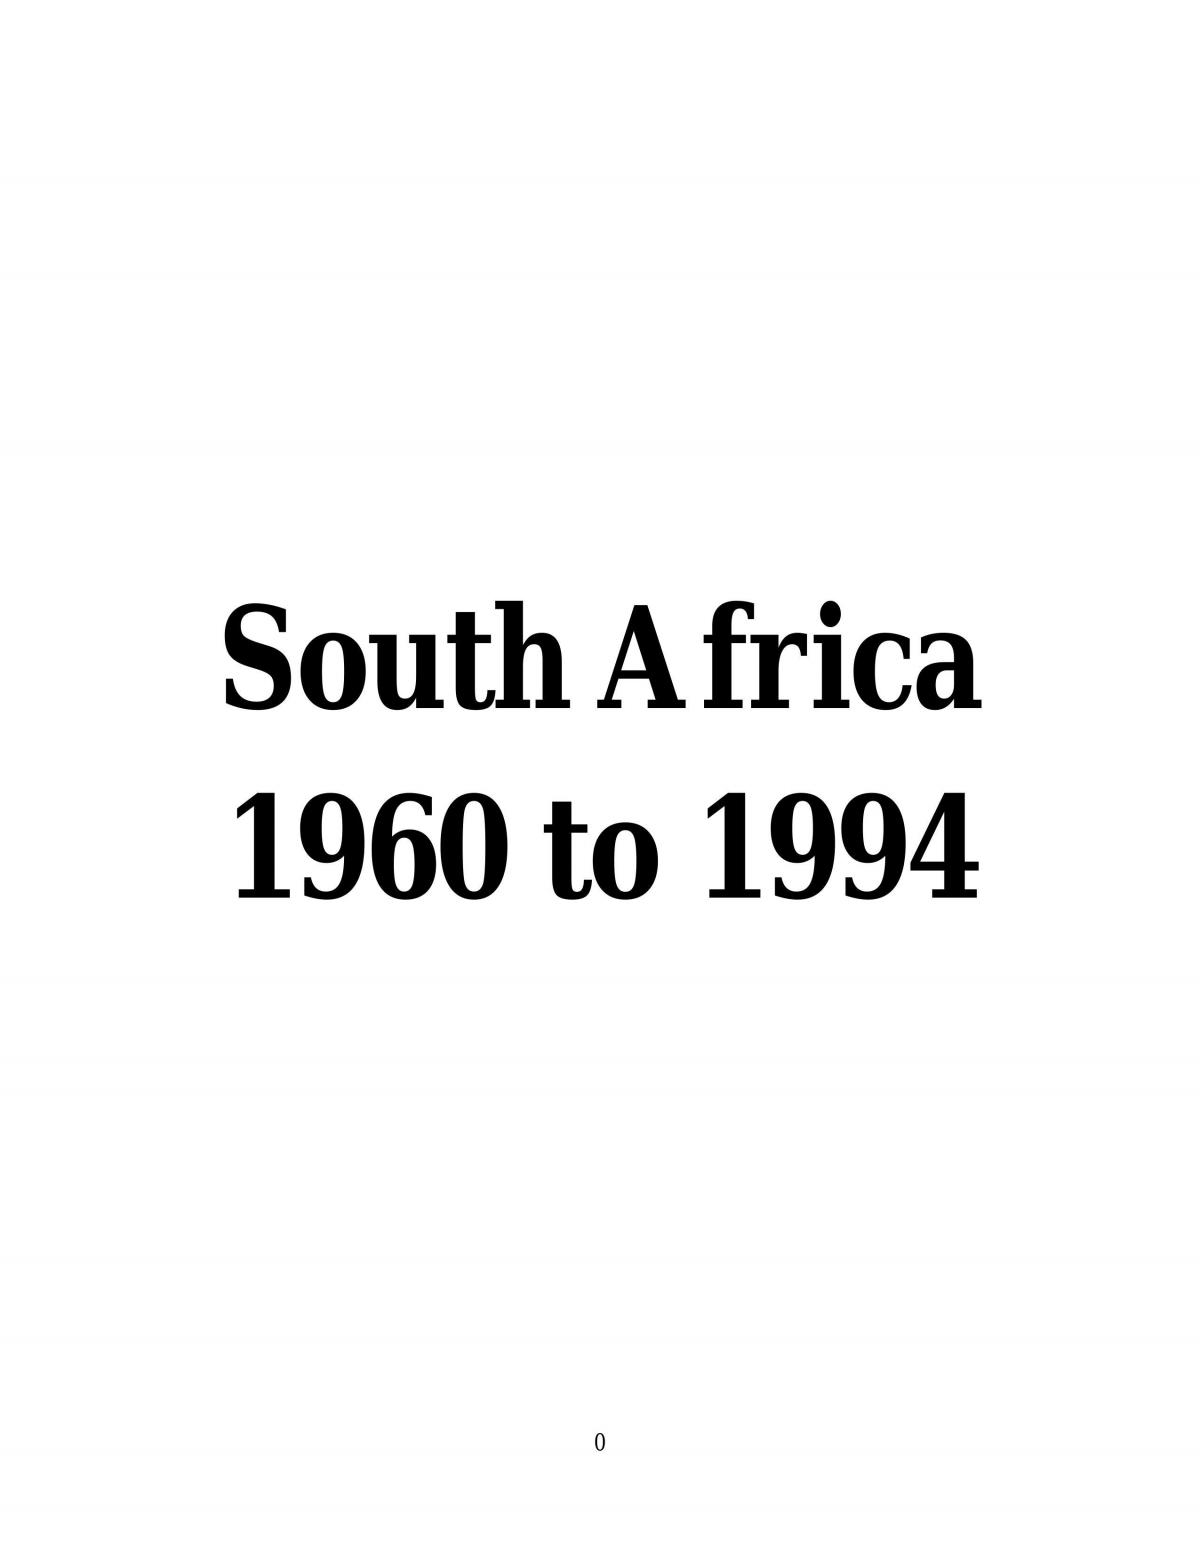 716 Afrikaner Weerstandsbeweging Stock Photos, High-Res Pictures